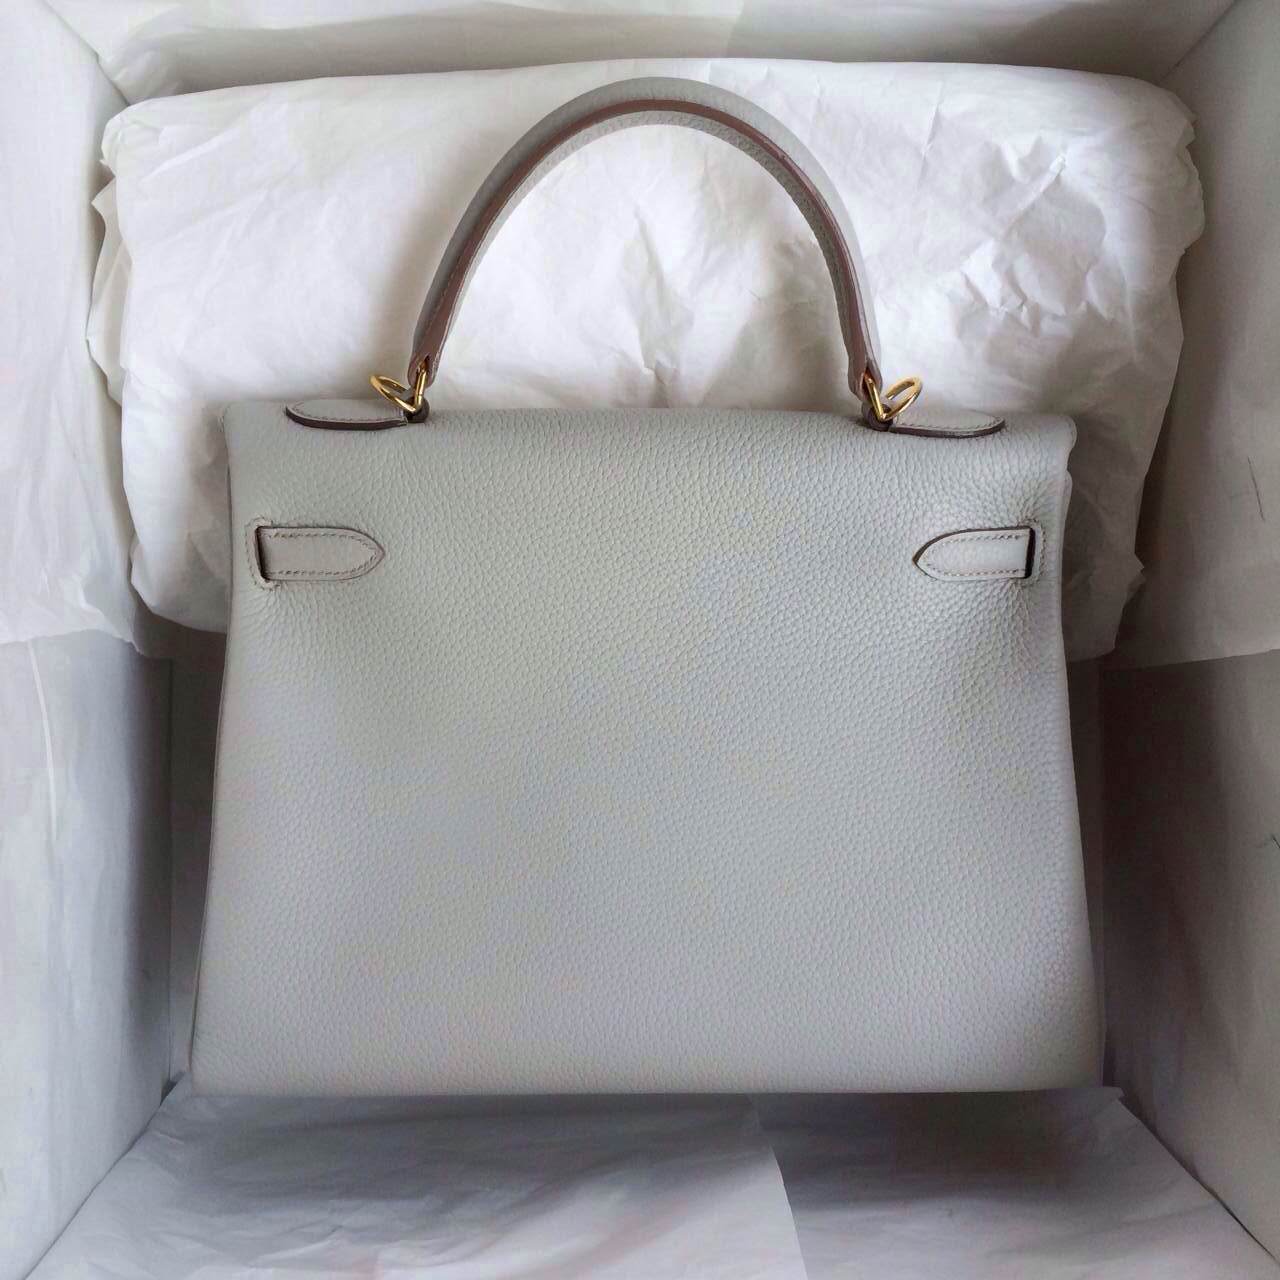 Popular Hermes Kelly Bag 28cm Retourne Pearl Grey France Togo Leather